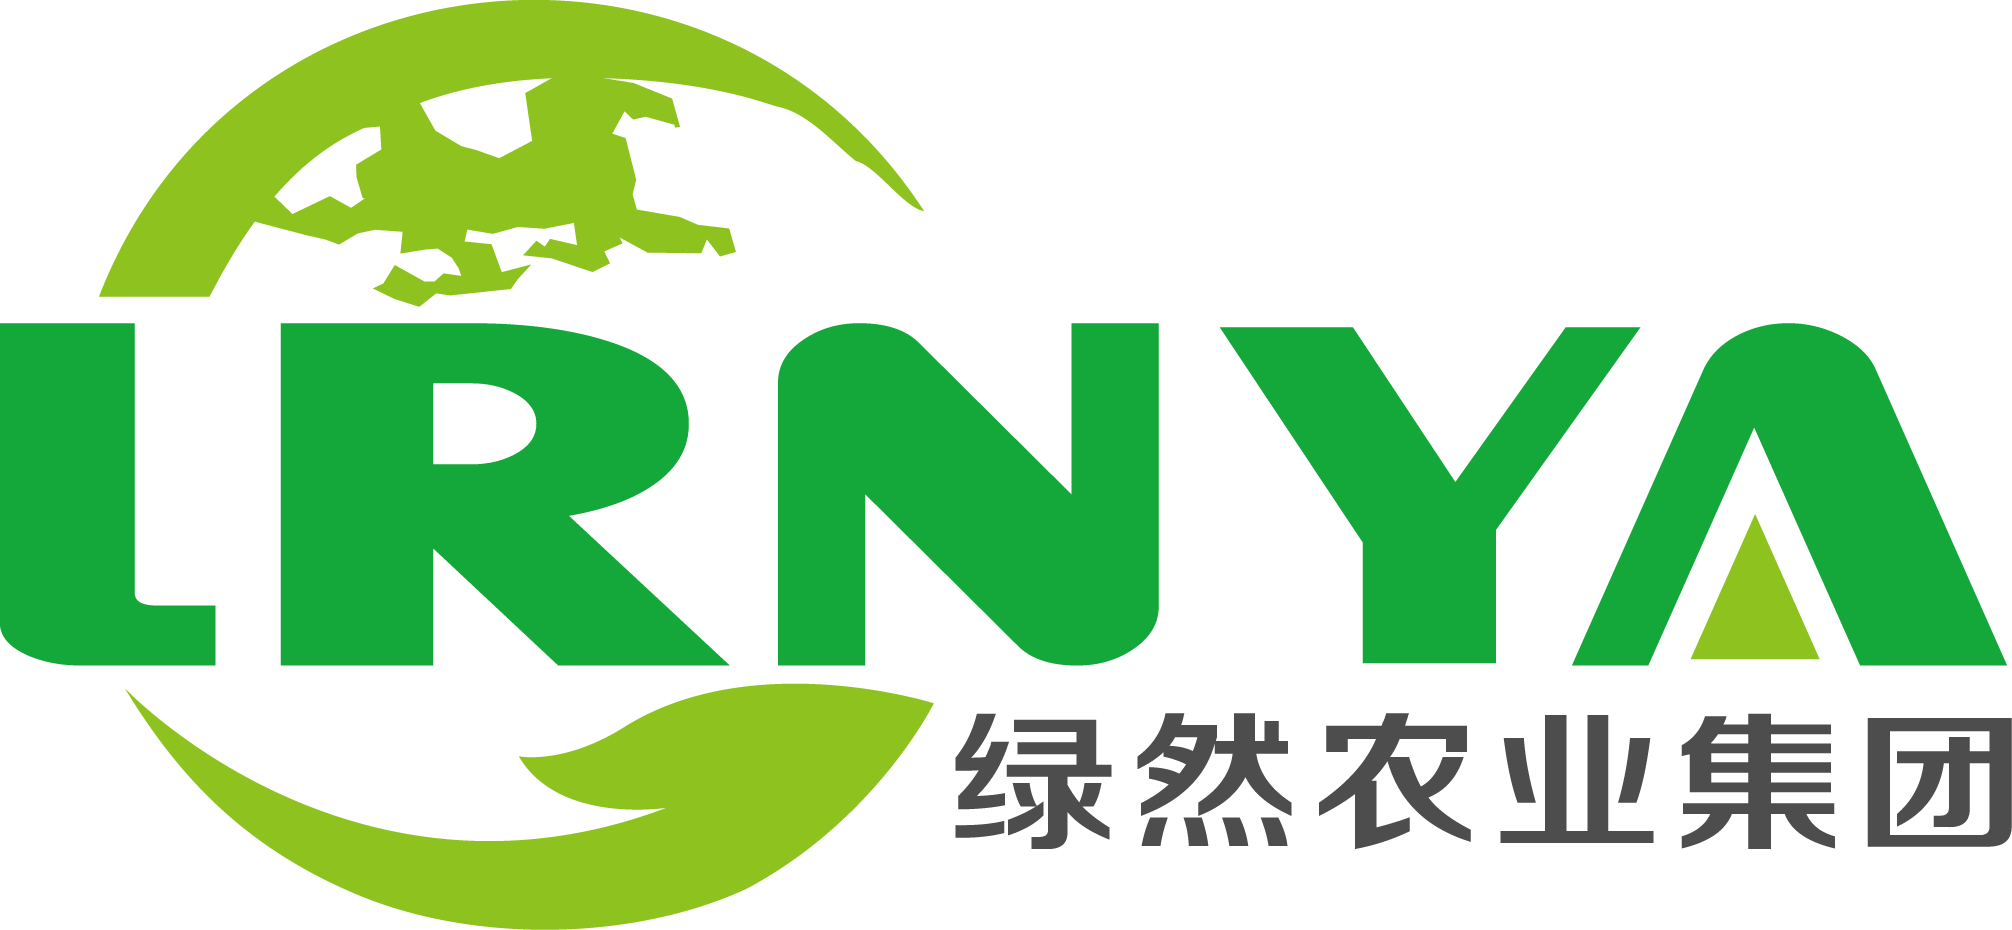 Shenzhen Lvran Agricultural Group Co., Ltd.